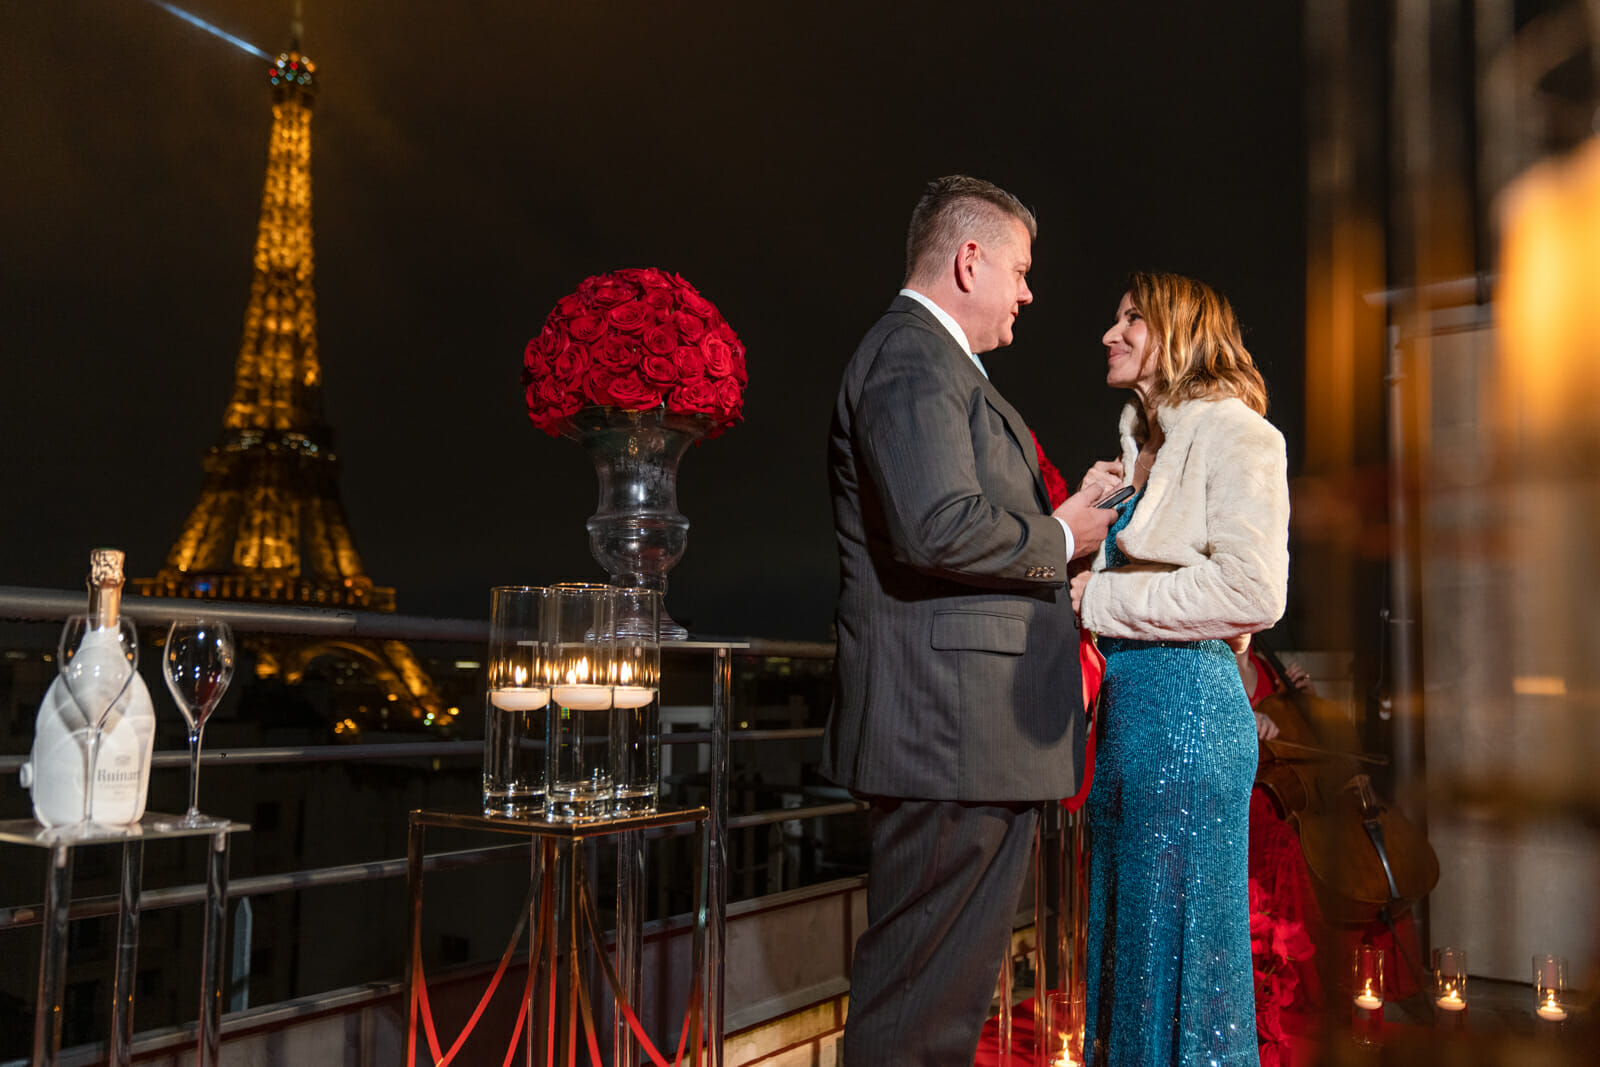 Shangri La Paris proposal offers multiple proposal spots with Eiffel Tower views.